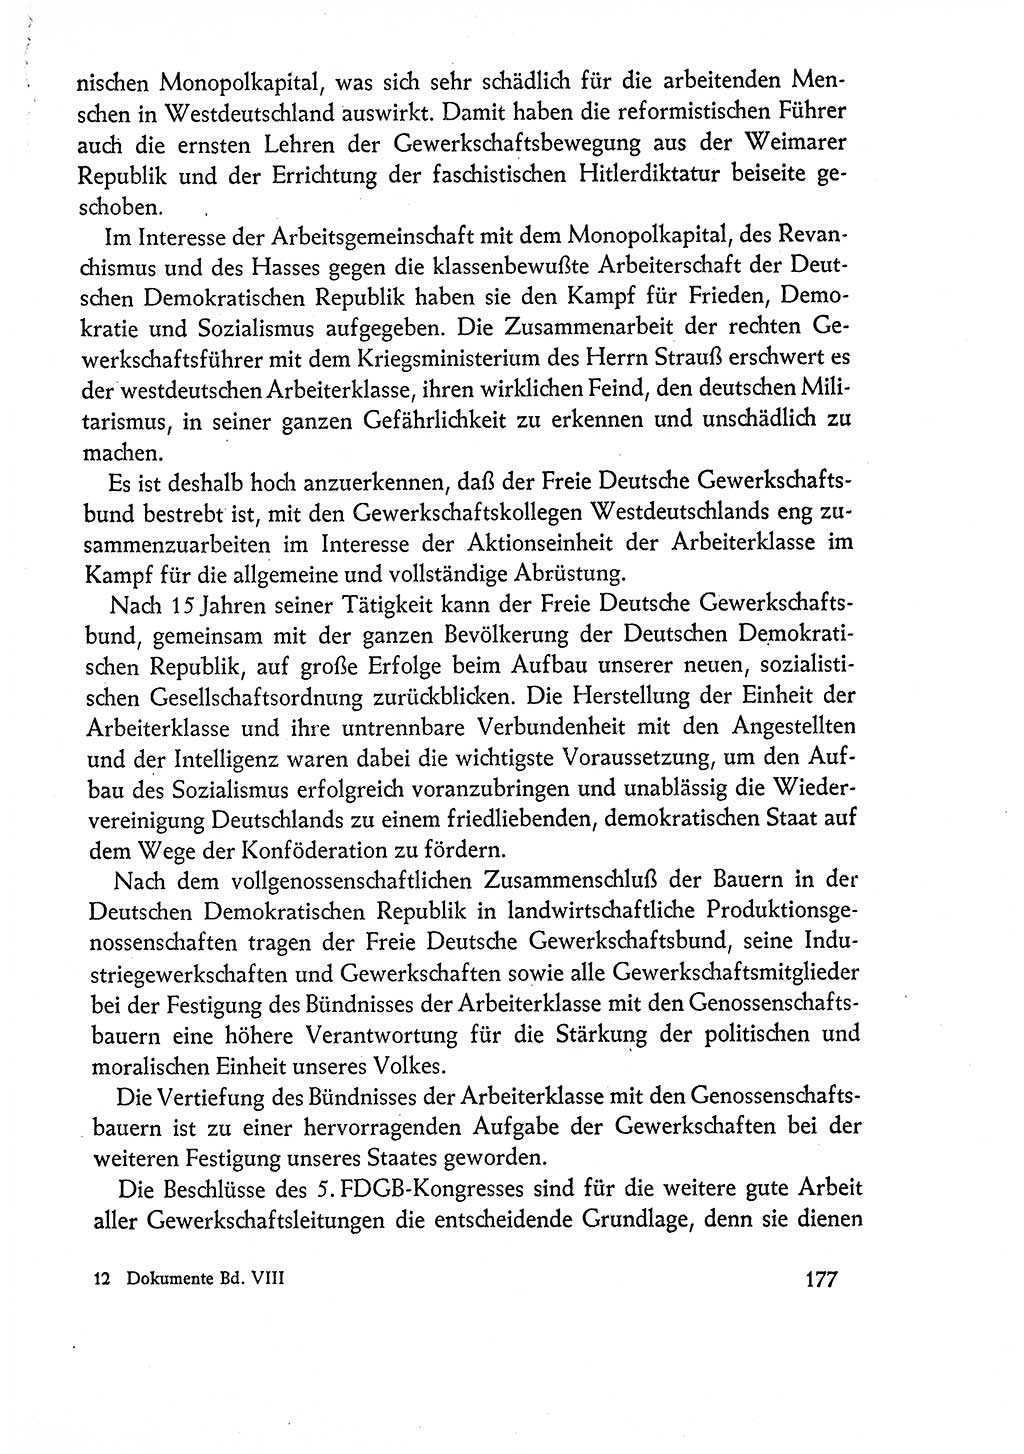 Dokumente der Sozialistischen Einheitspartei Deutschlands (SED) [Deutsche Demokratische Republik (DDR)] 1960-1961, Seite 177 (Dok. SED DDR 1960-1961, S. 177)